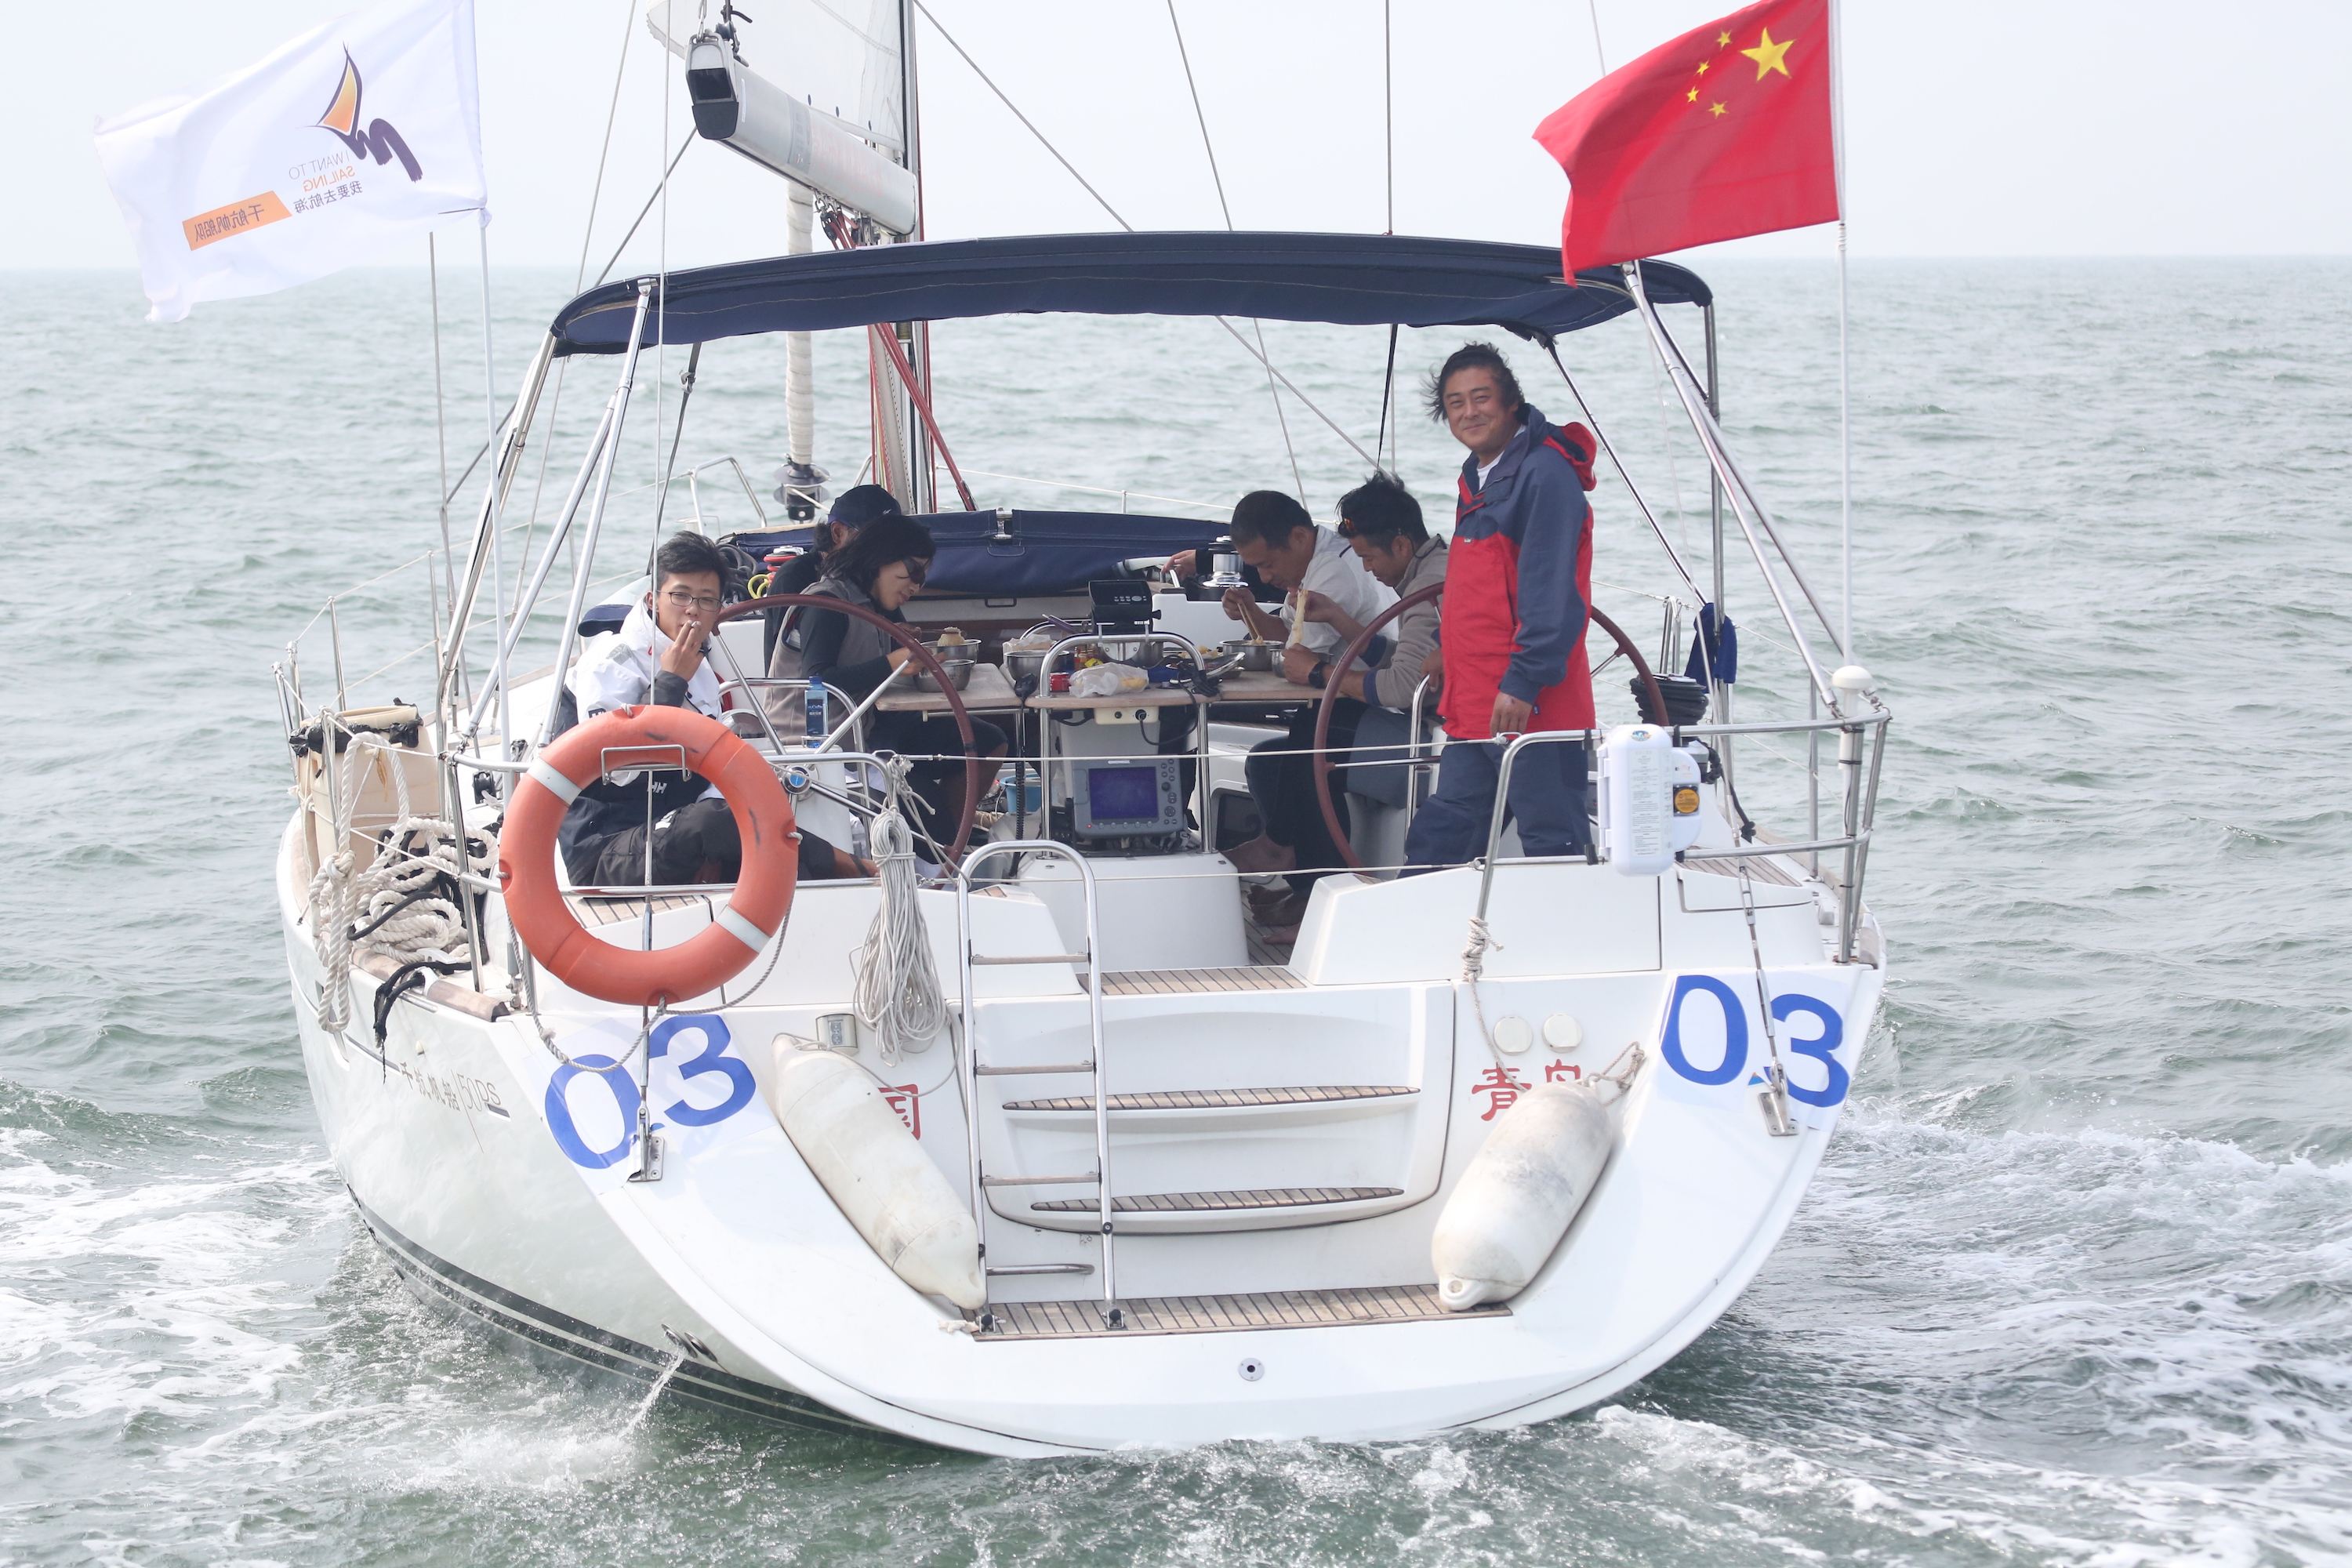 我要航海网千航帆船队2016环渤海杯帆船拉力赛5V8A8027.JPG